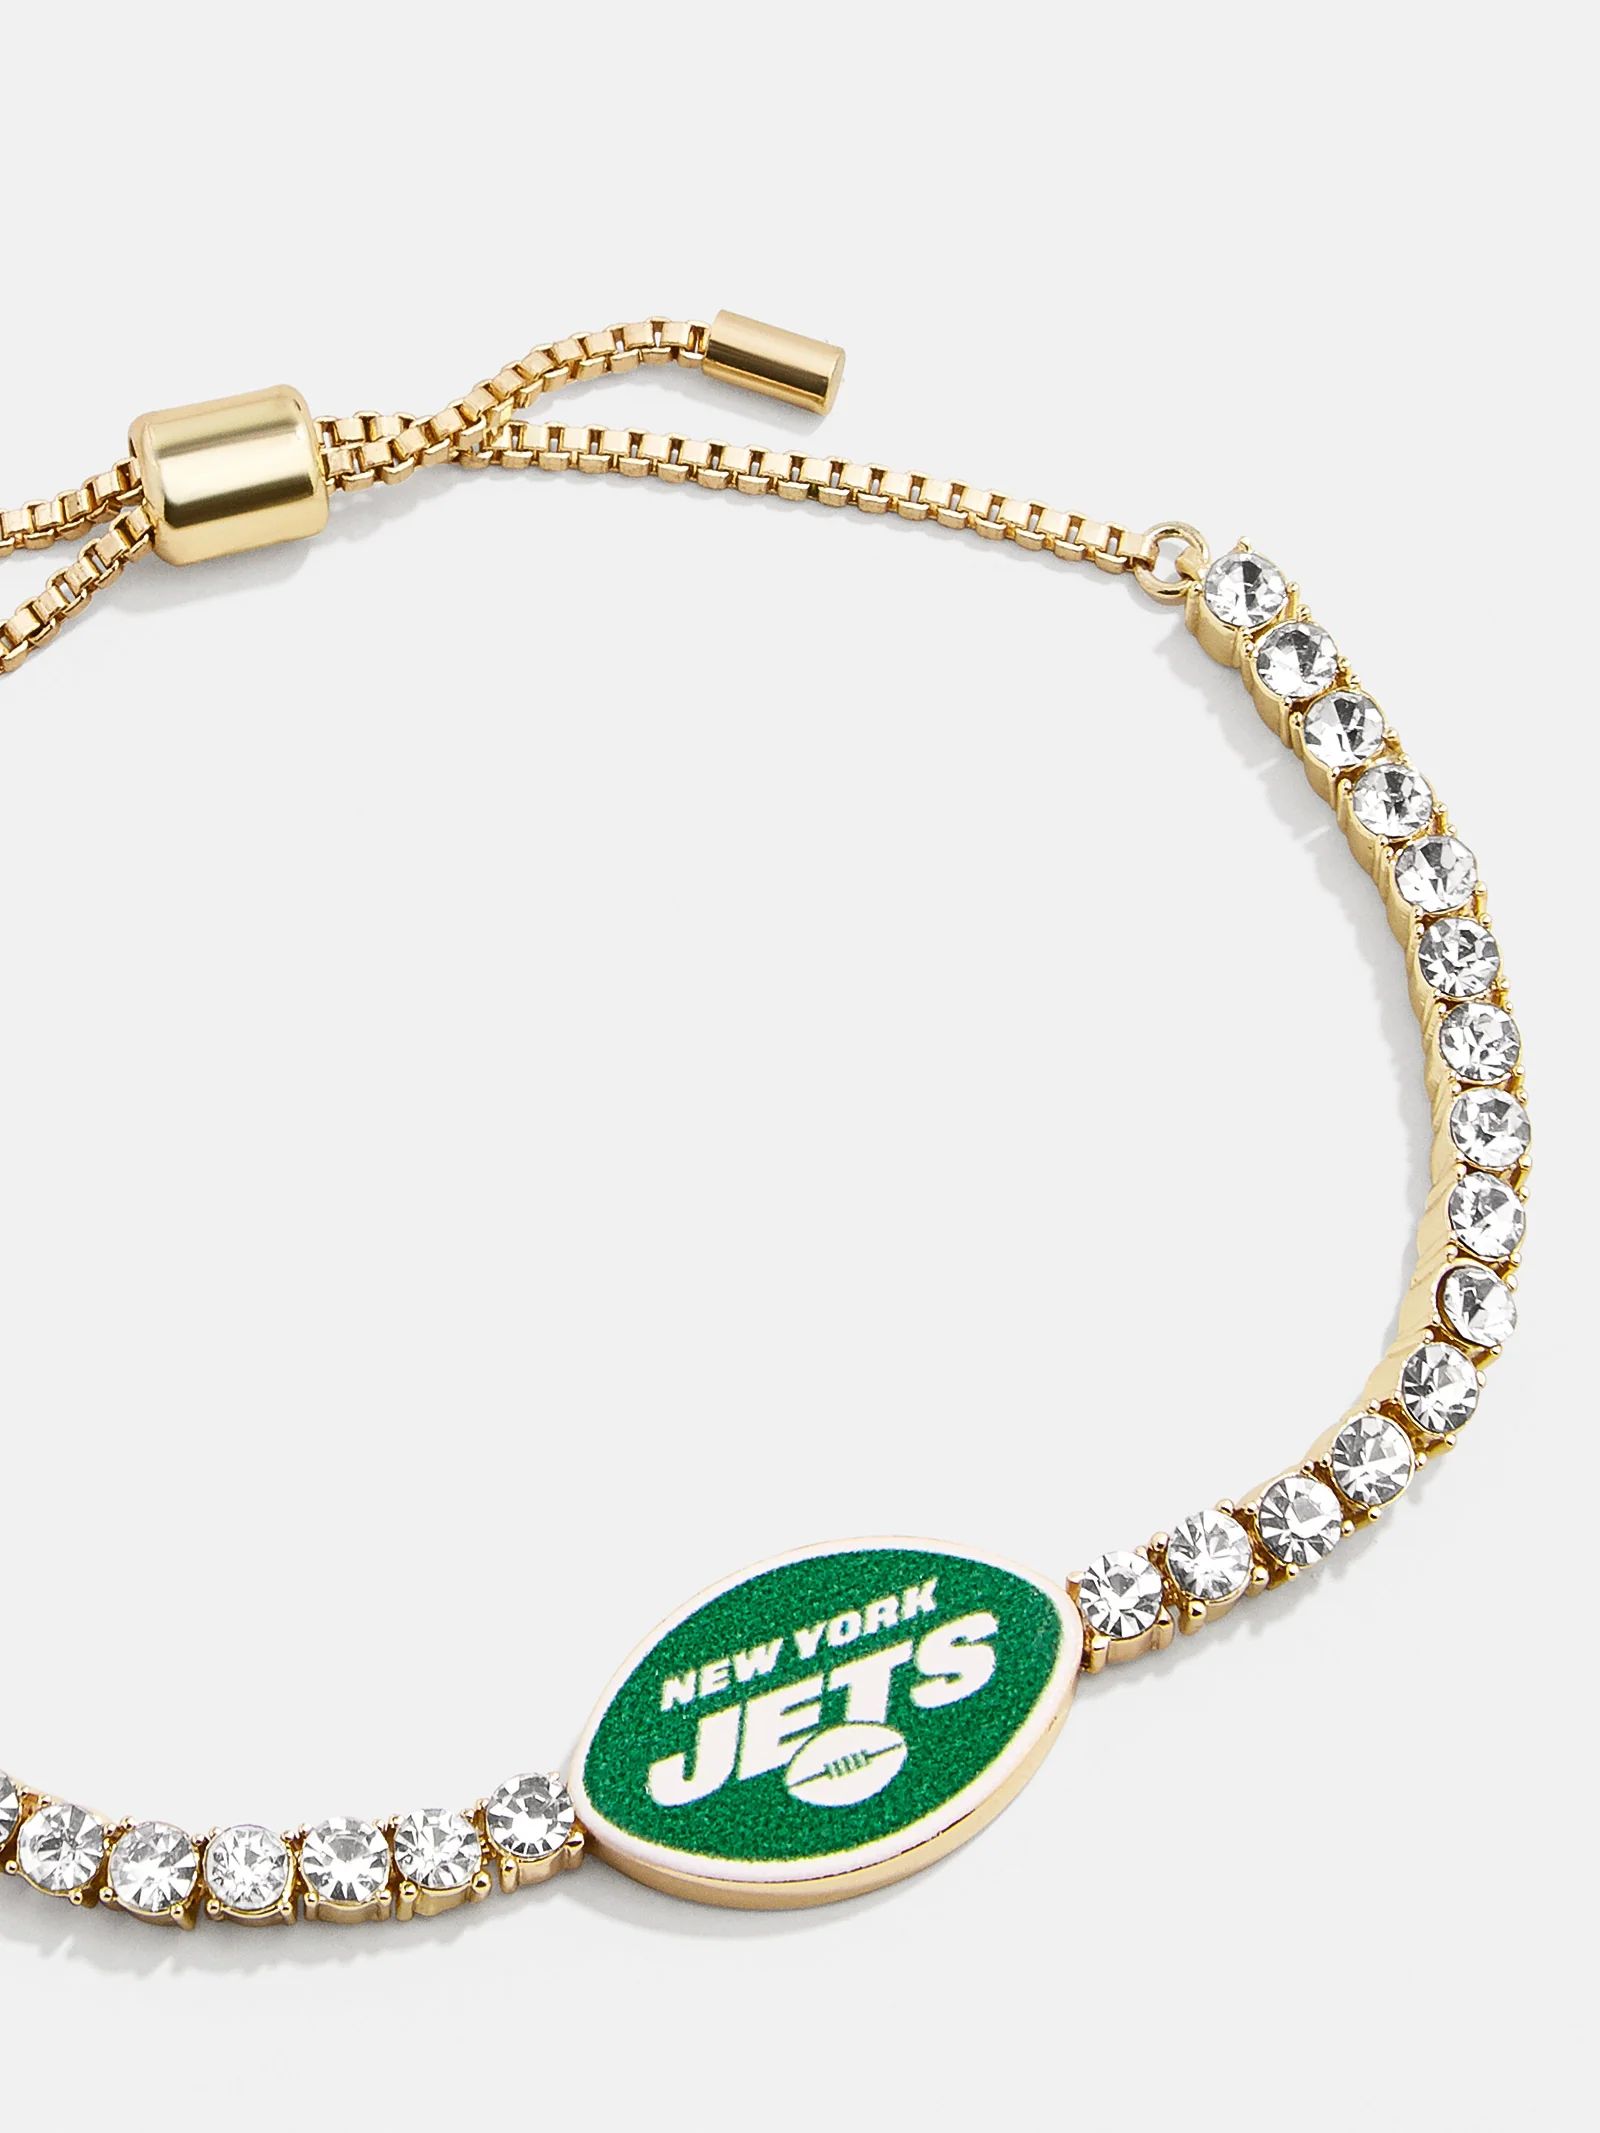 New York Jets NFL Gold Tennis Bracelet - New York Jets | BaubleBar (US)